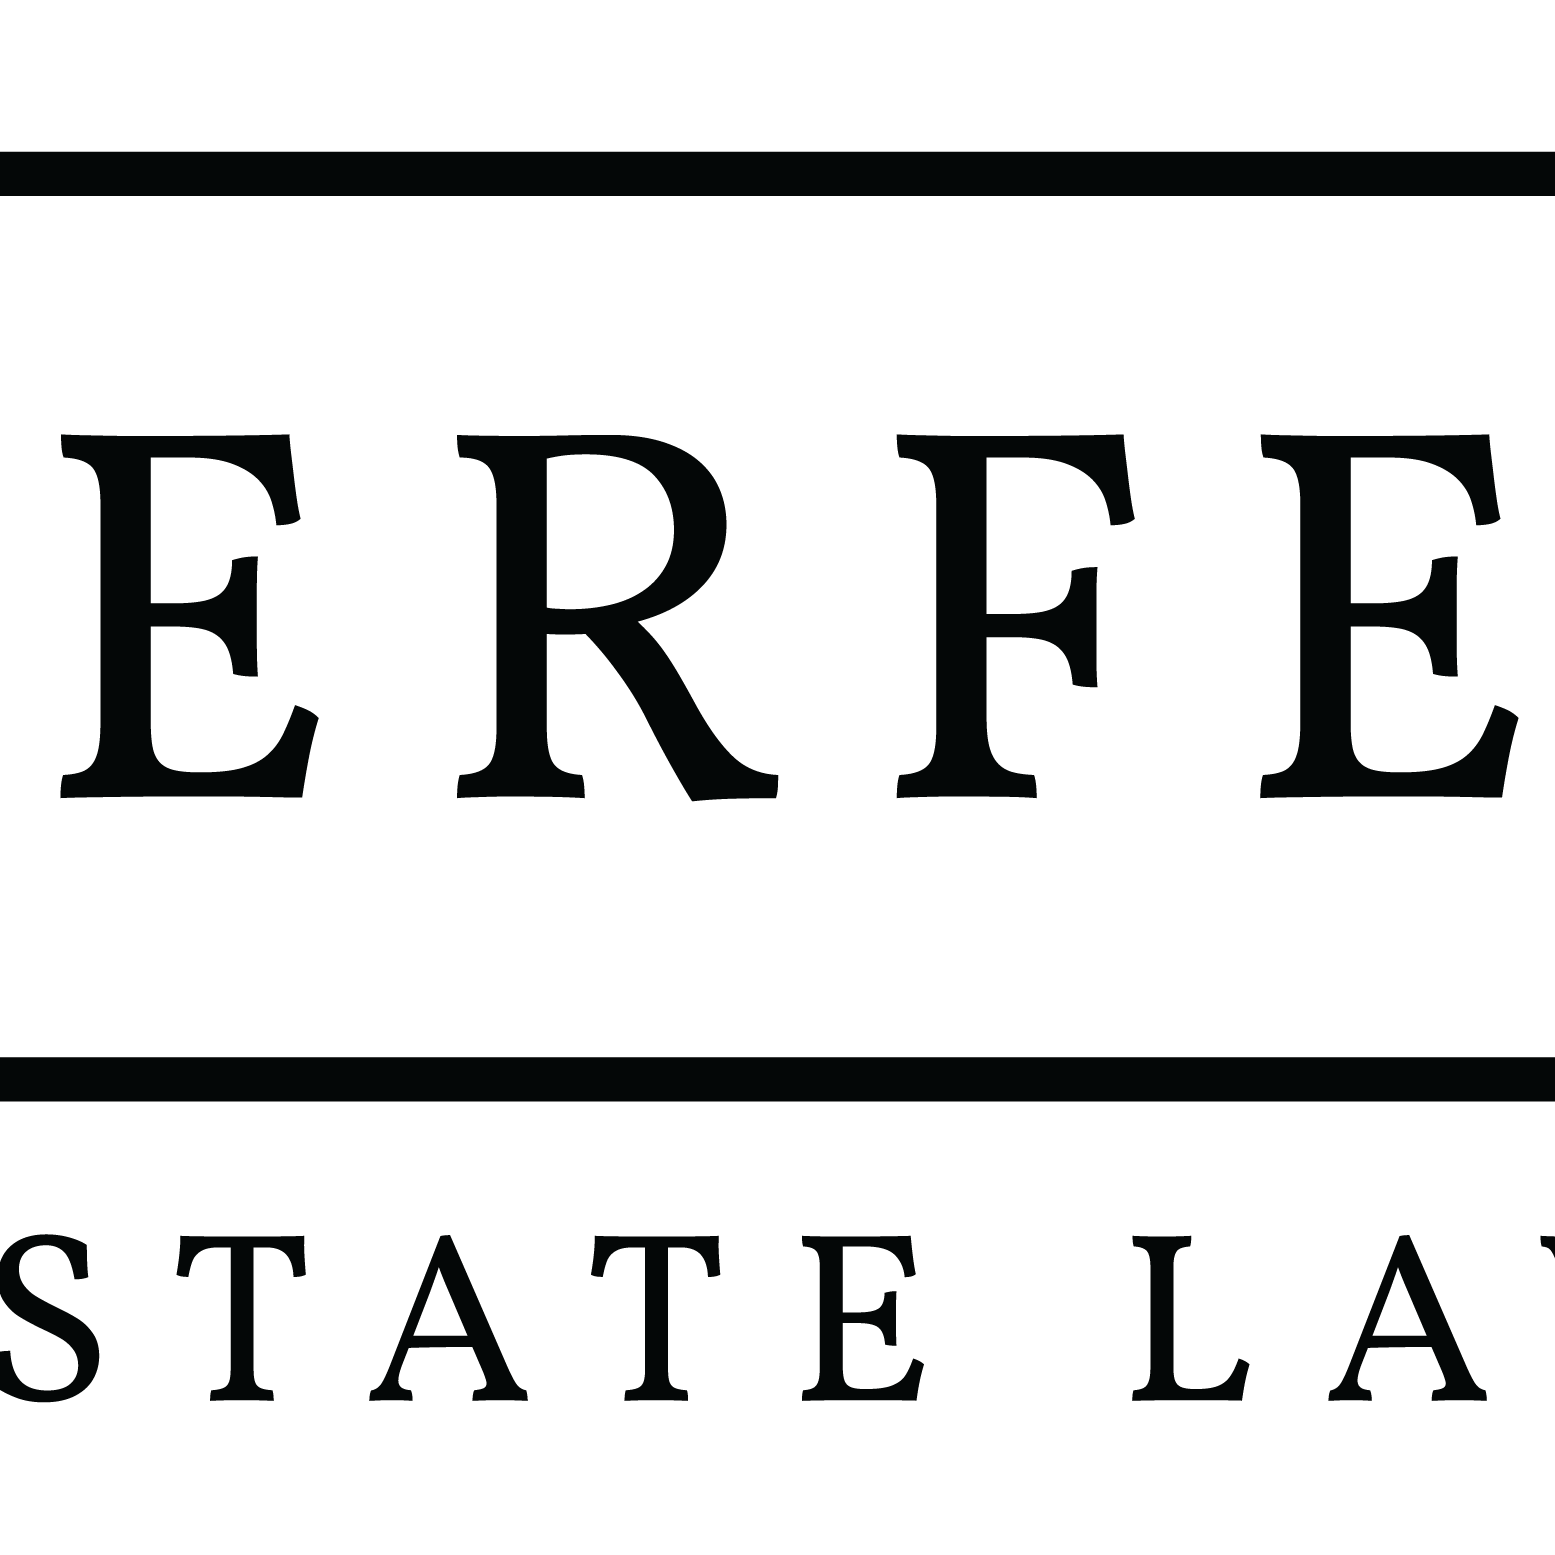 Derfel Estate Law - Toronto, ON, Canada